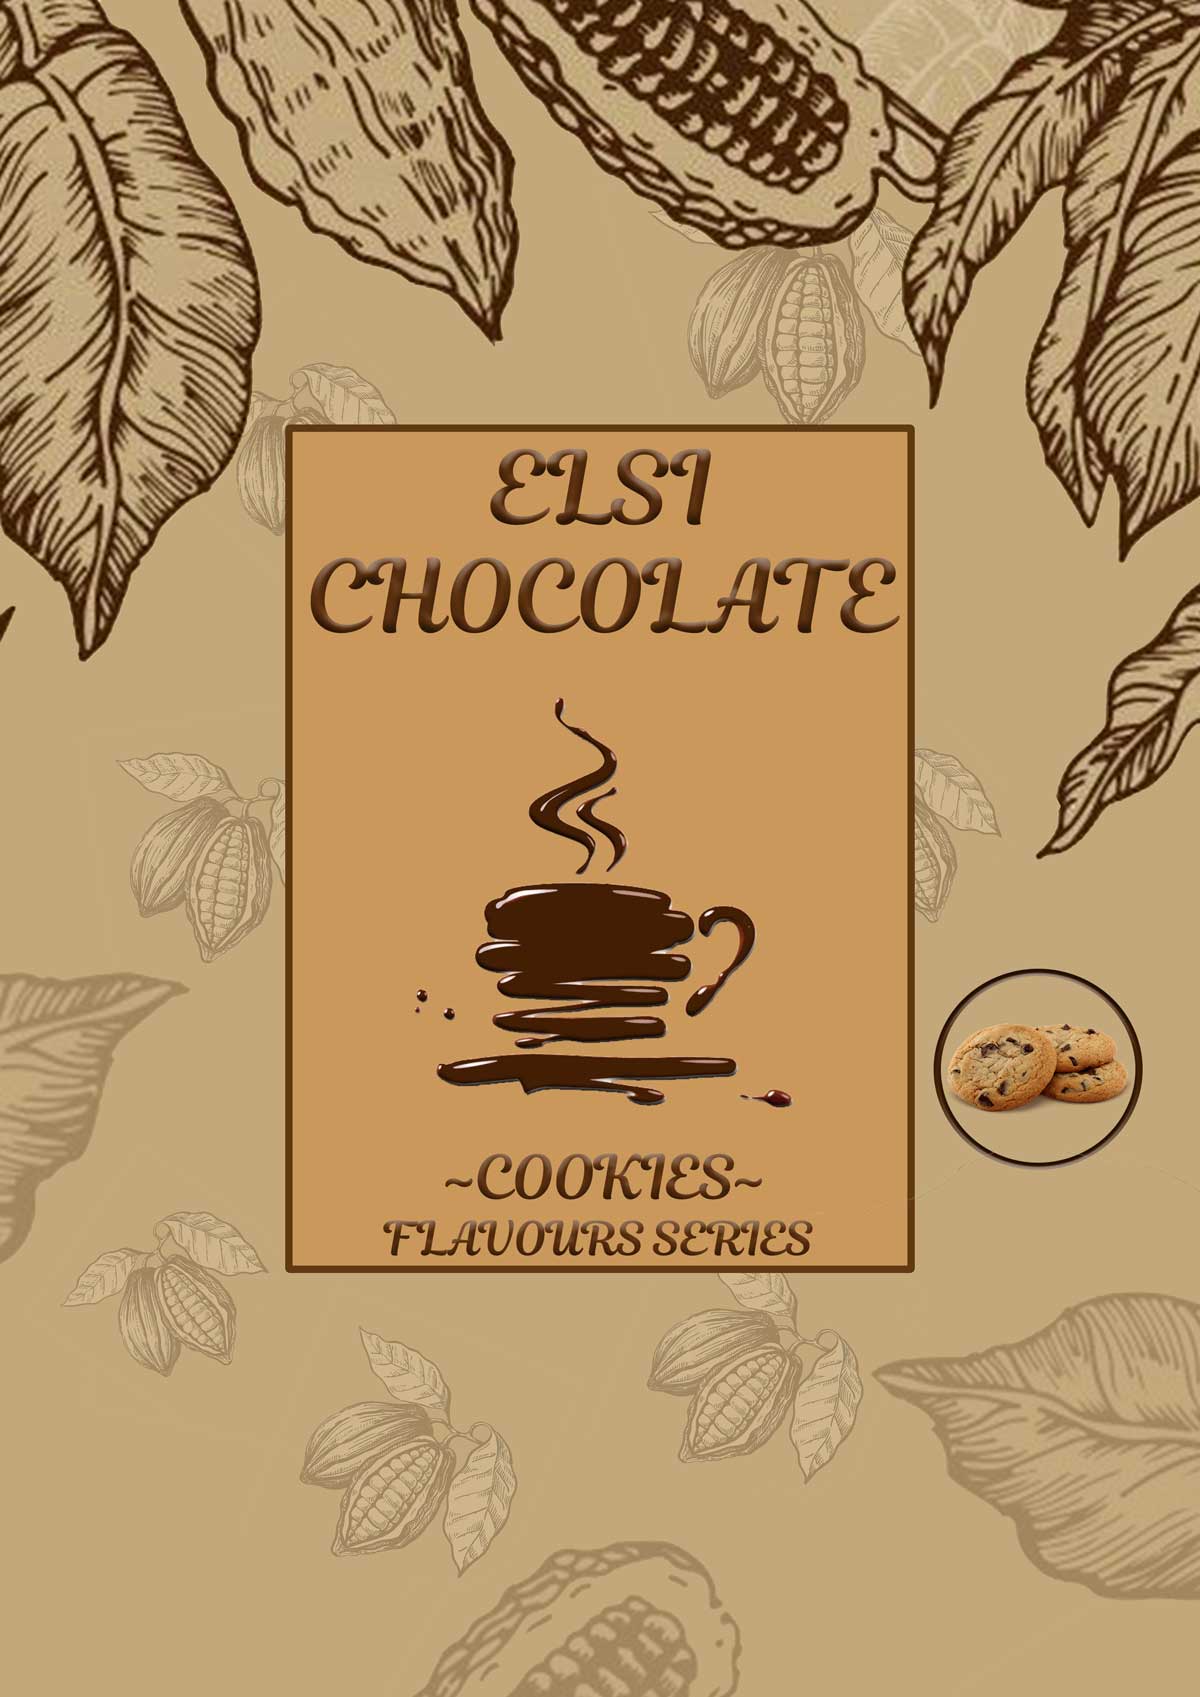 Ρόφημα Σοκολάτας – Elsi Cookies- Flavours Series